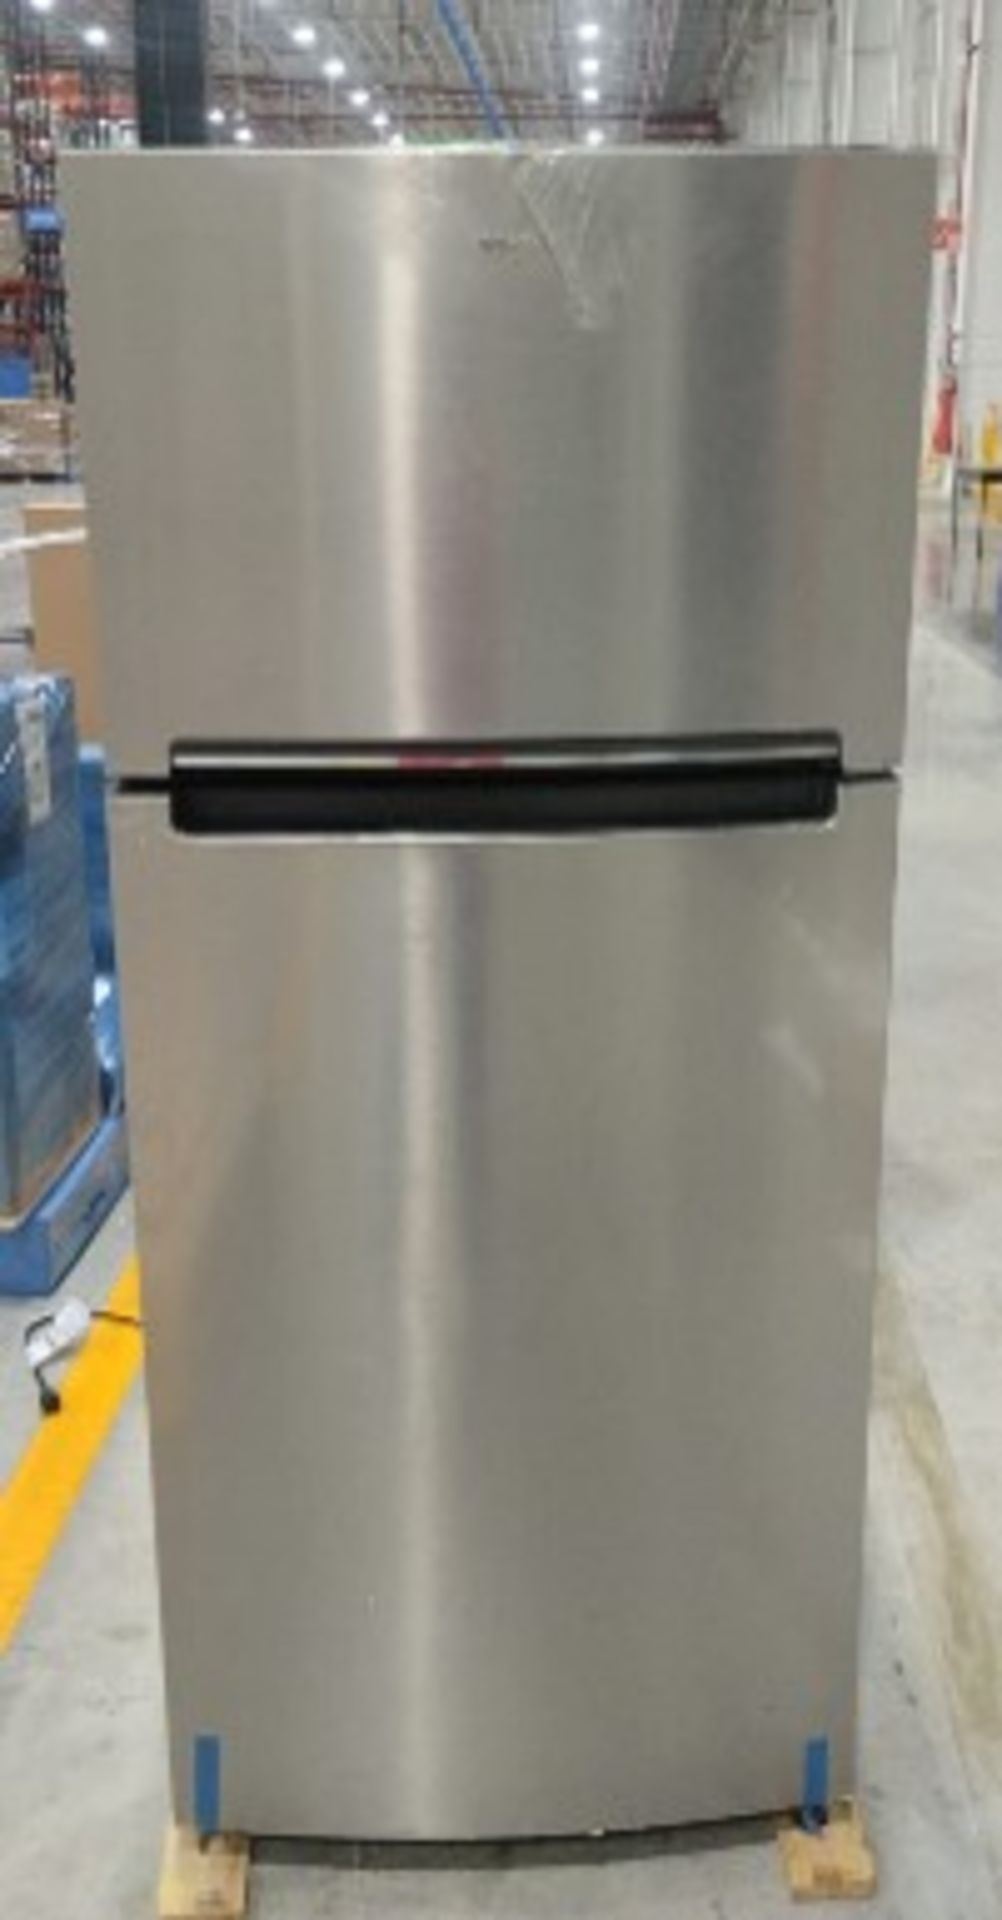 (Daño minimo) Refrigerador top mount Marca whirlpool 17ft3, Refrigerador marca Mabe auto 14 pies ne